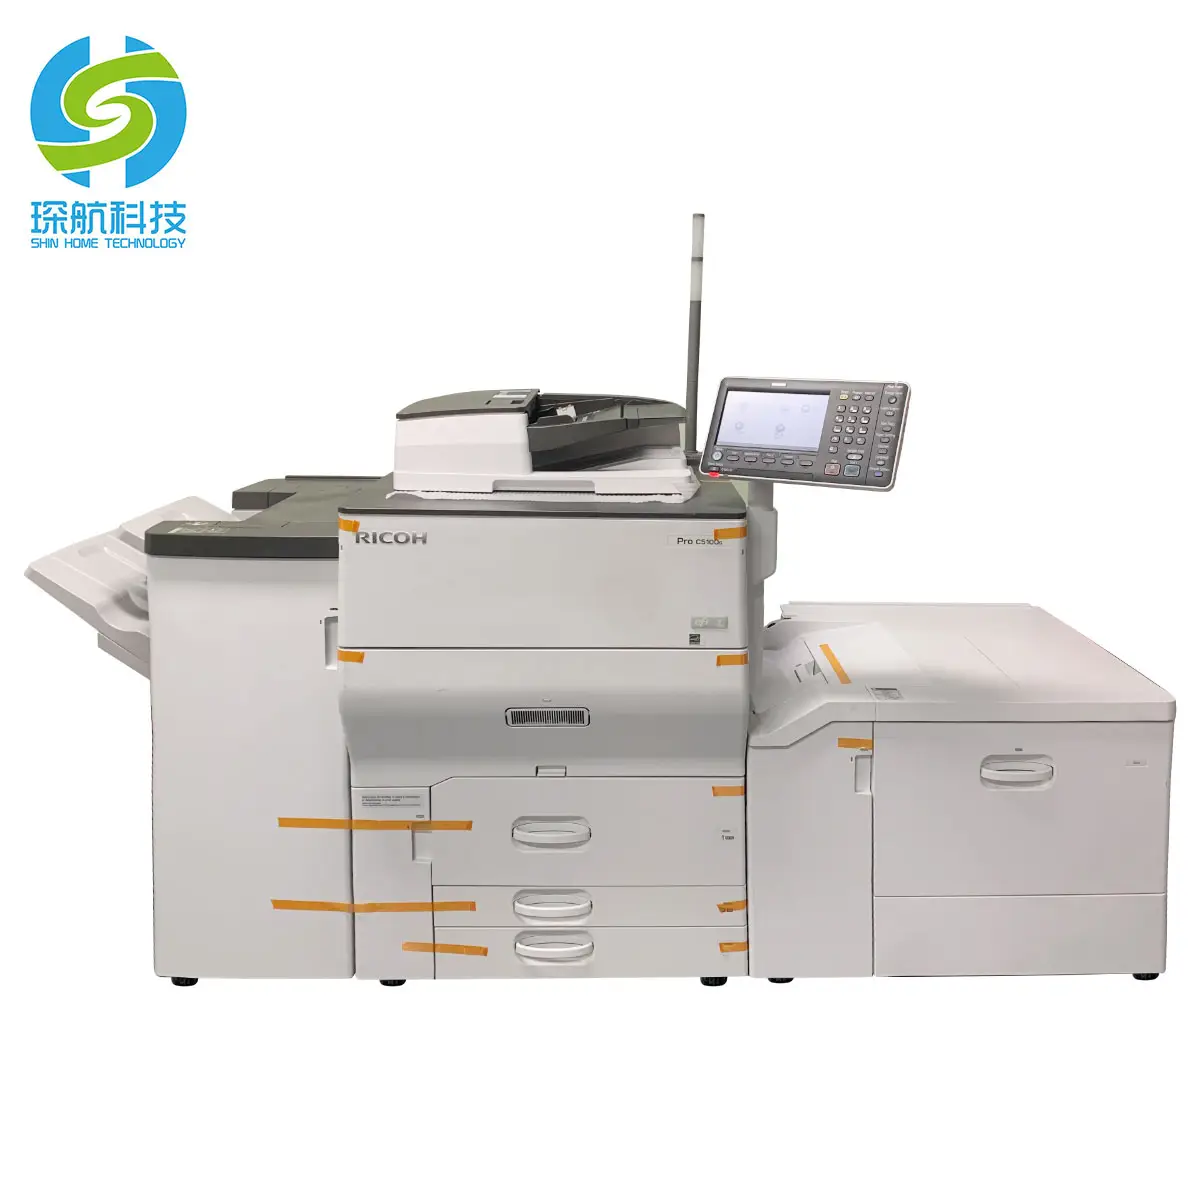 Fotocopiatrice usata buona copiatrice funzionante per Ricoh PRO 5100S 5110S Copiadoras stampante Laser A3 rigenerata